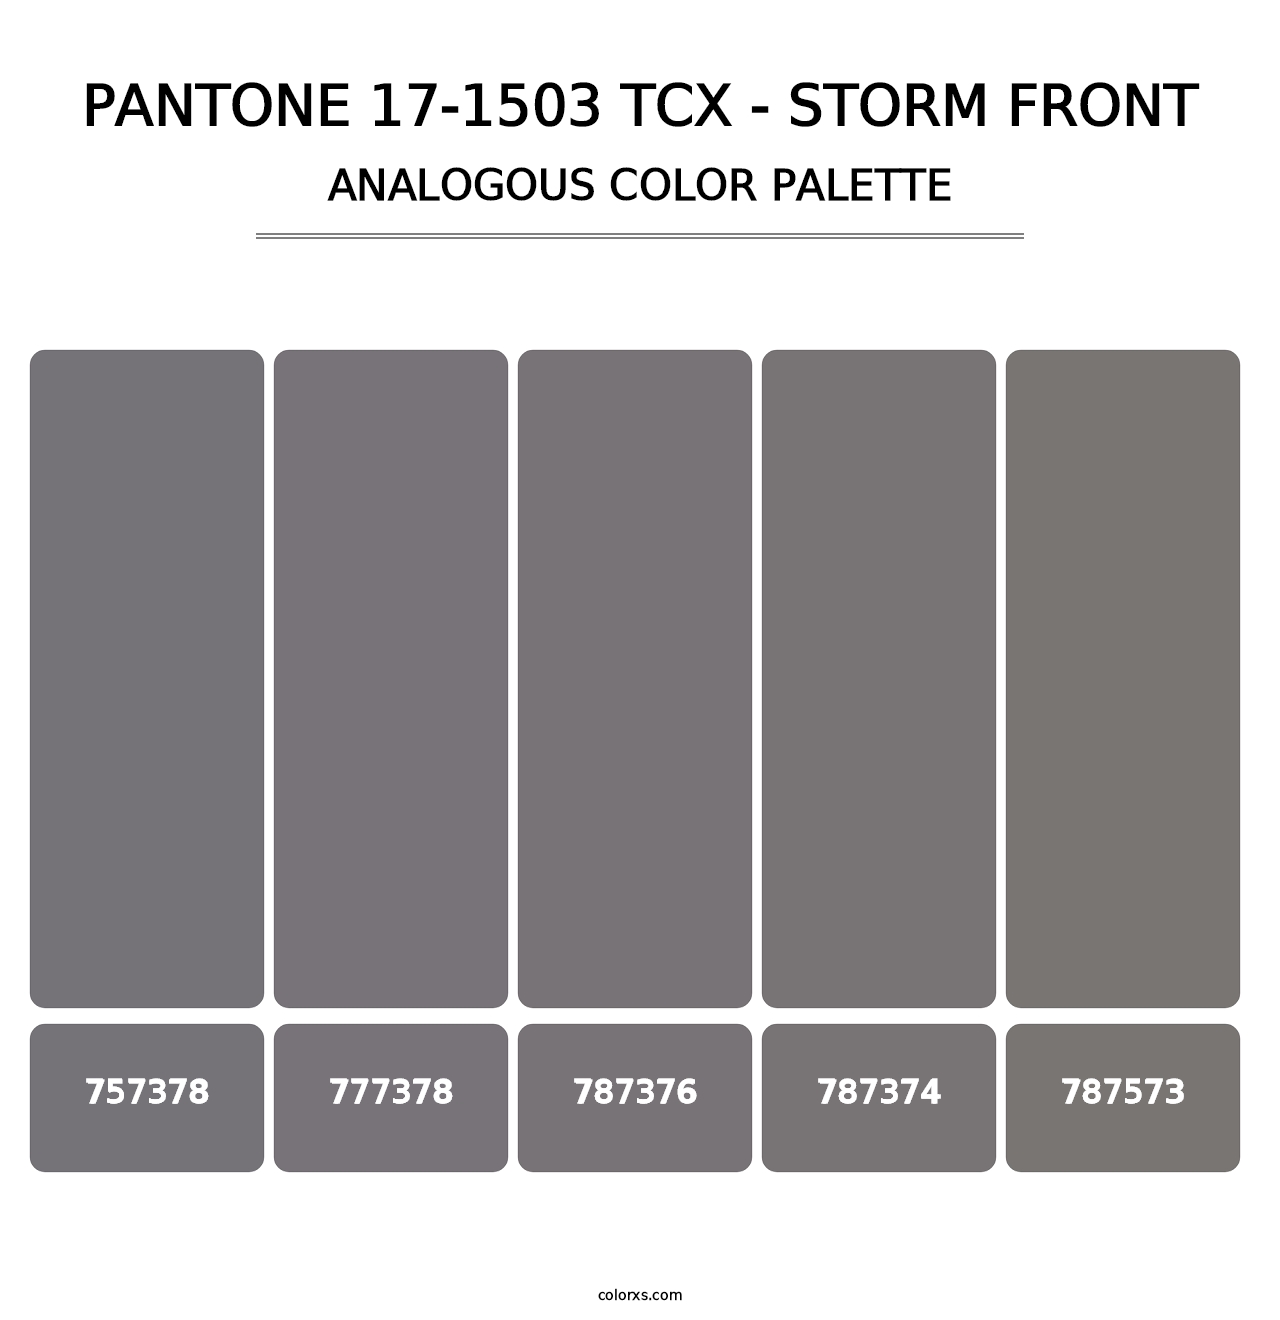 PANTONE 17-1503 TCX - Storm Front - Analogous Color Palette